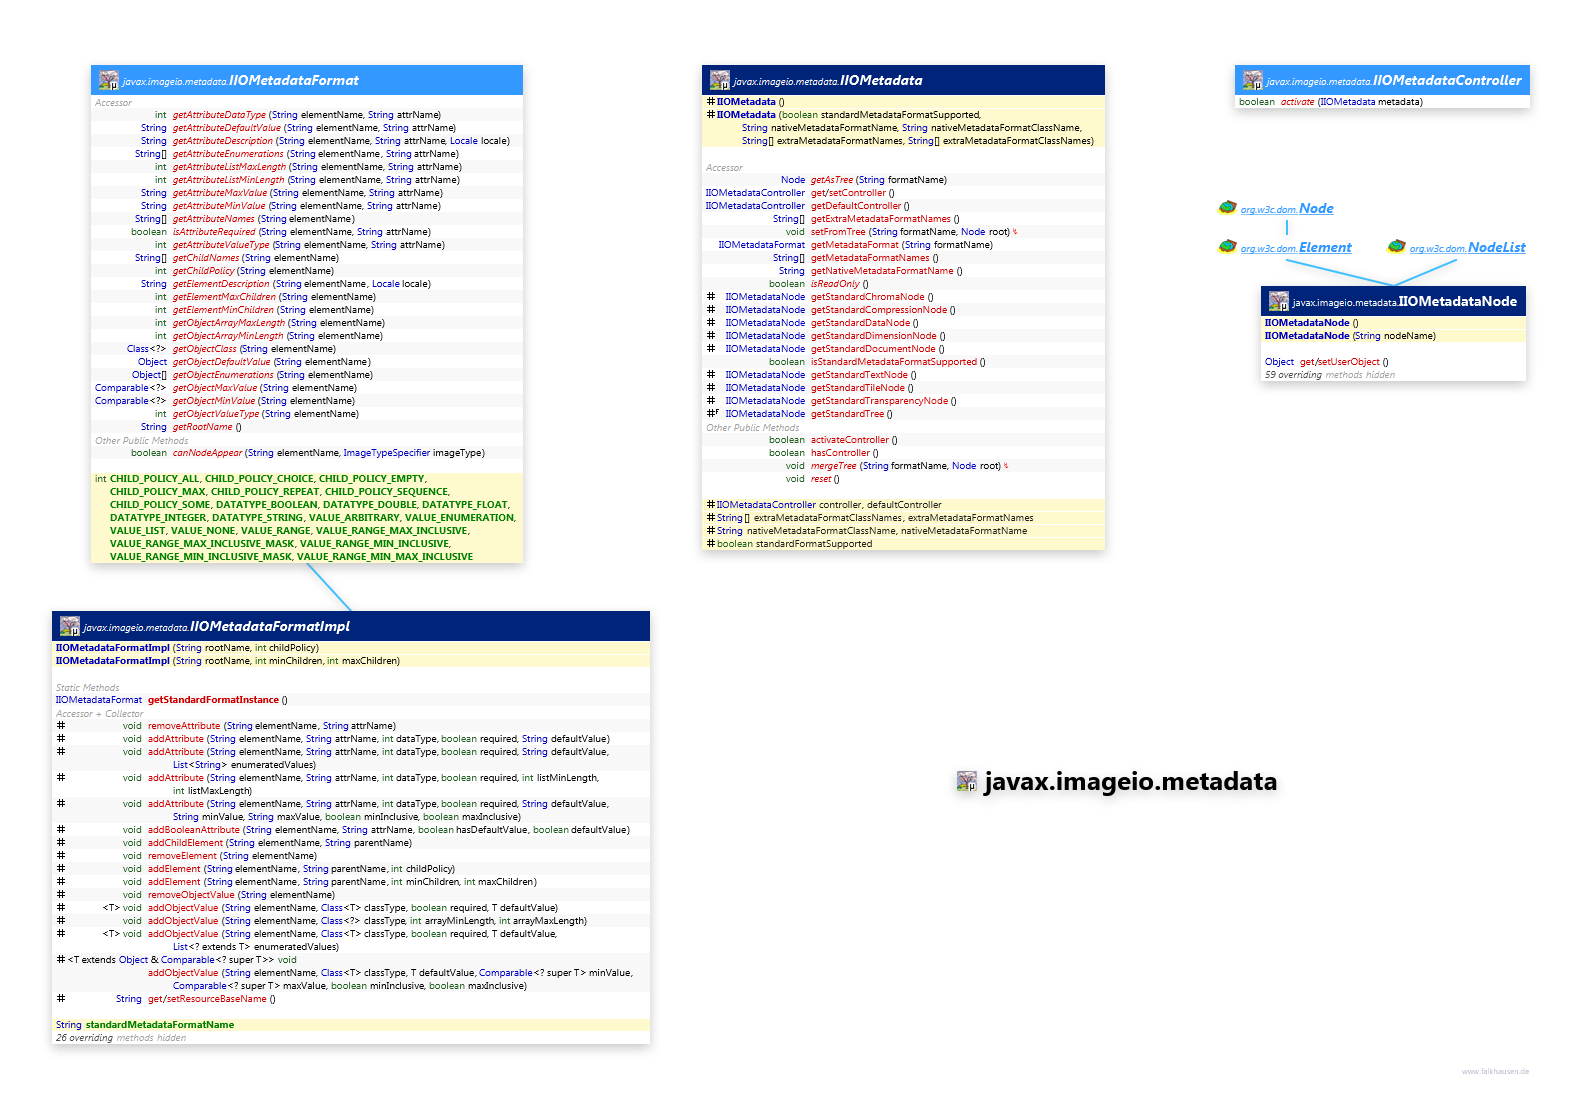 javax.imageio.metadata class diagram and api documentation for Java 7